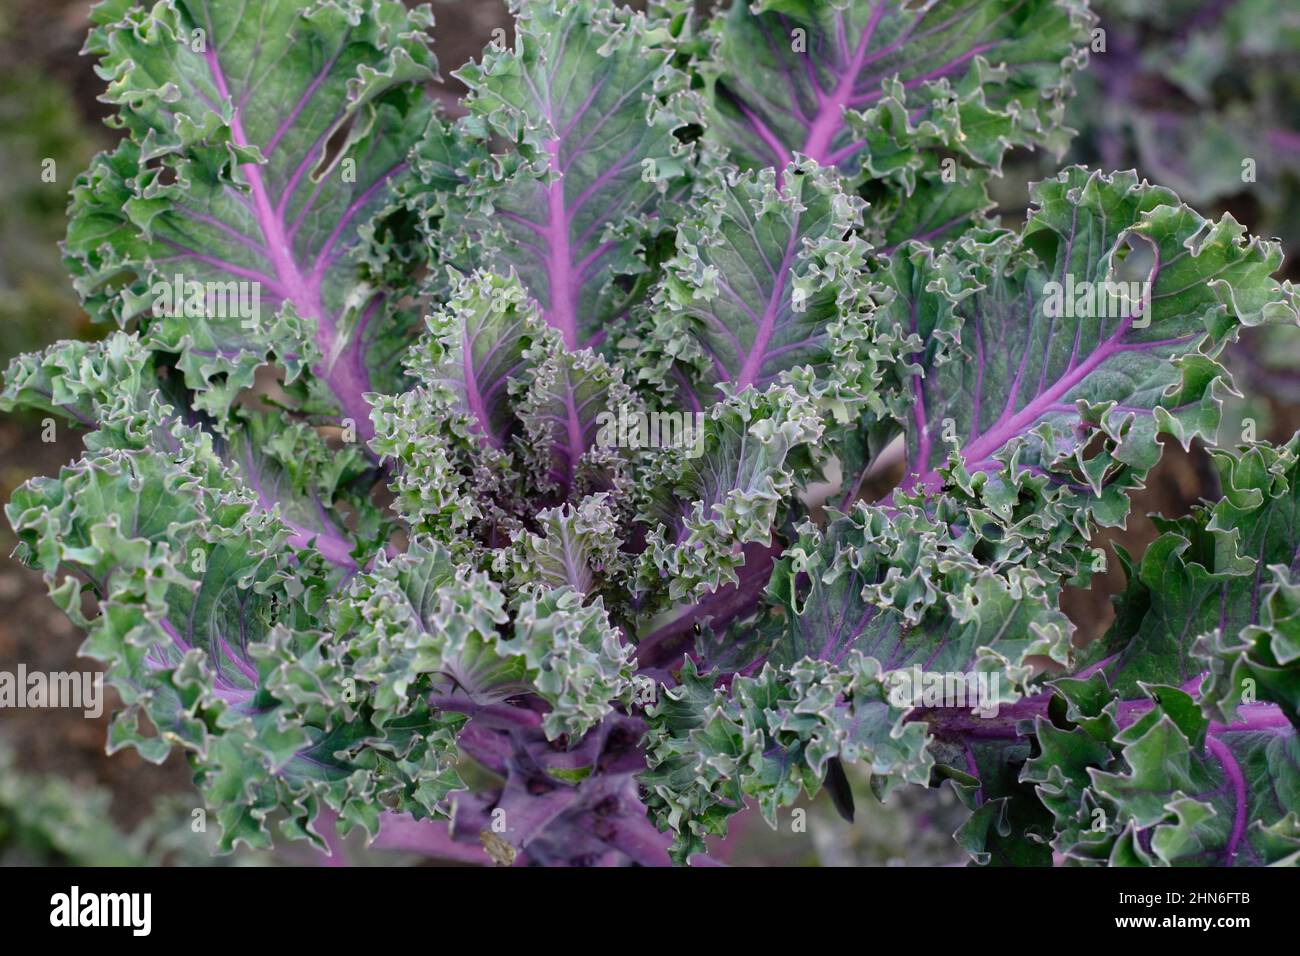 Brassica oleracea' 'Midnight Sun' kale, dekorative kale Blätter mit violetten Adern. VEREINIGTES KÖNIGREICH. Stockfoto